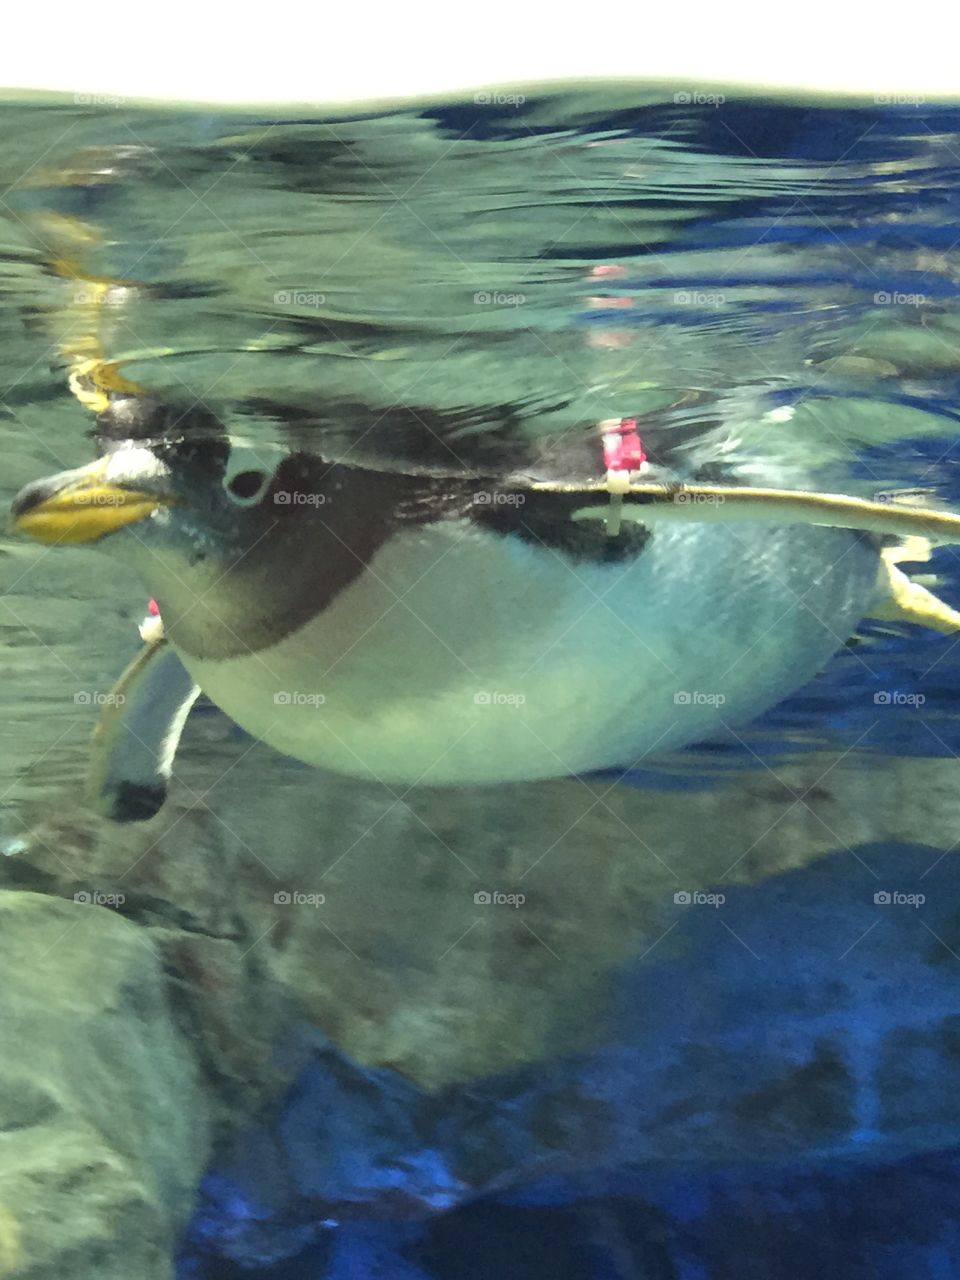 Penguin at Georgia Aquarium in Atlanta, Georgia